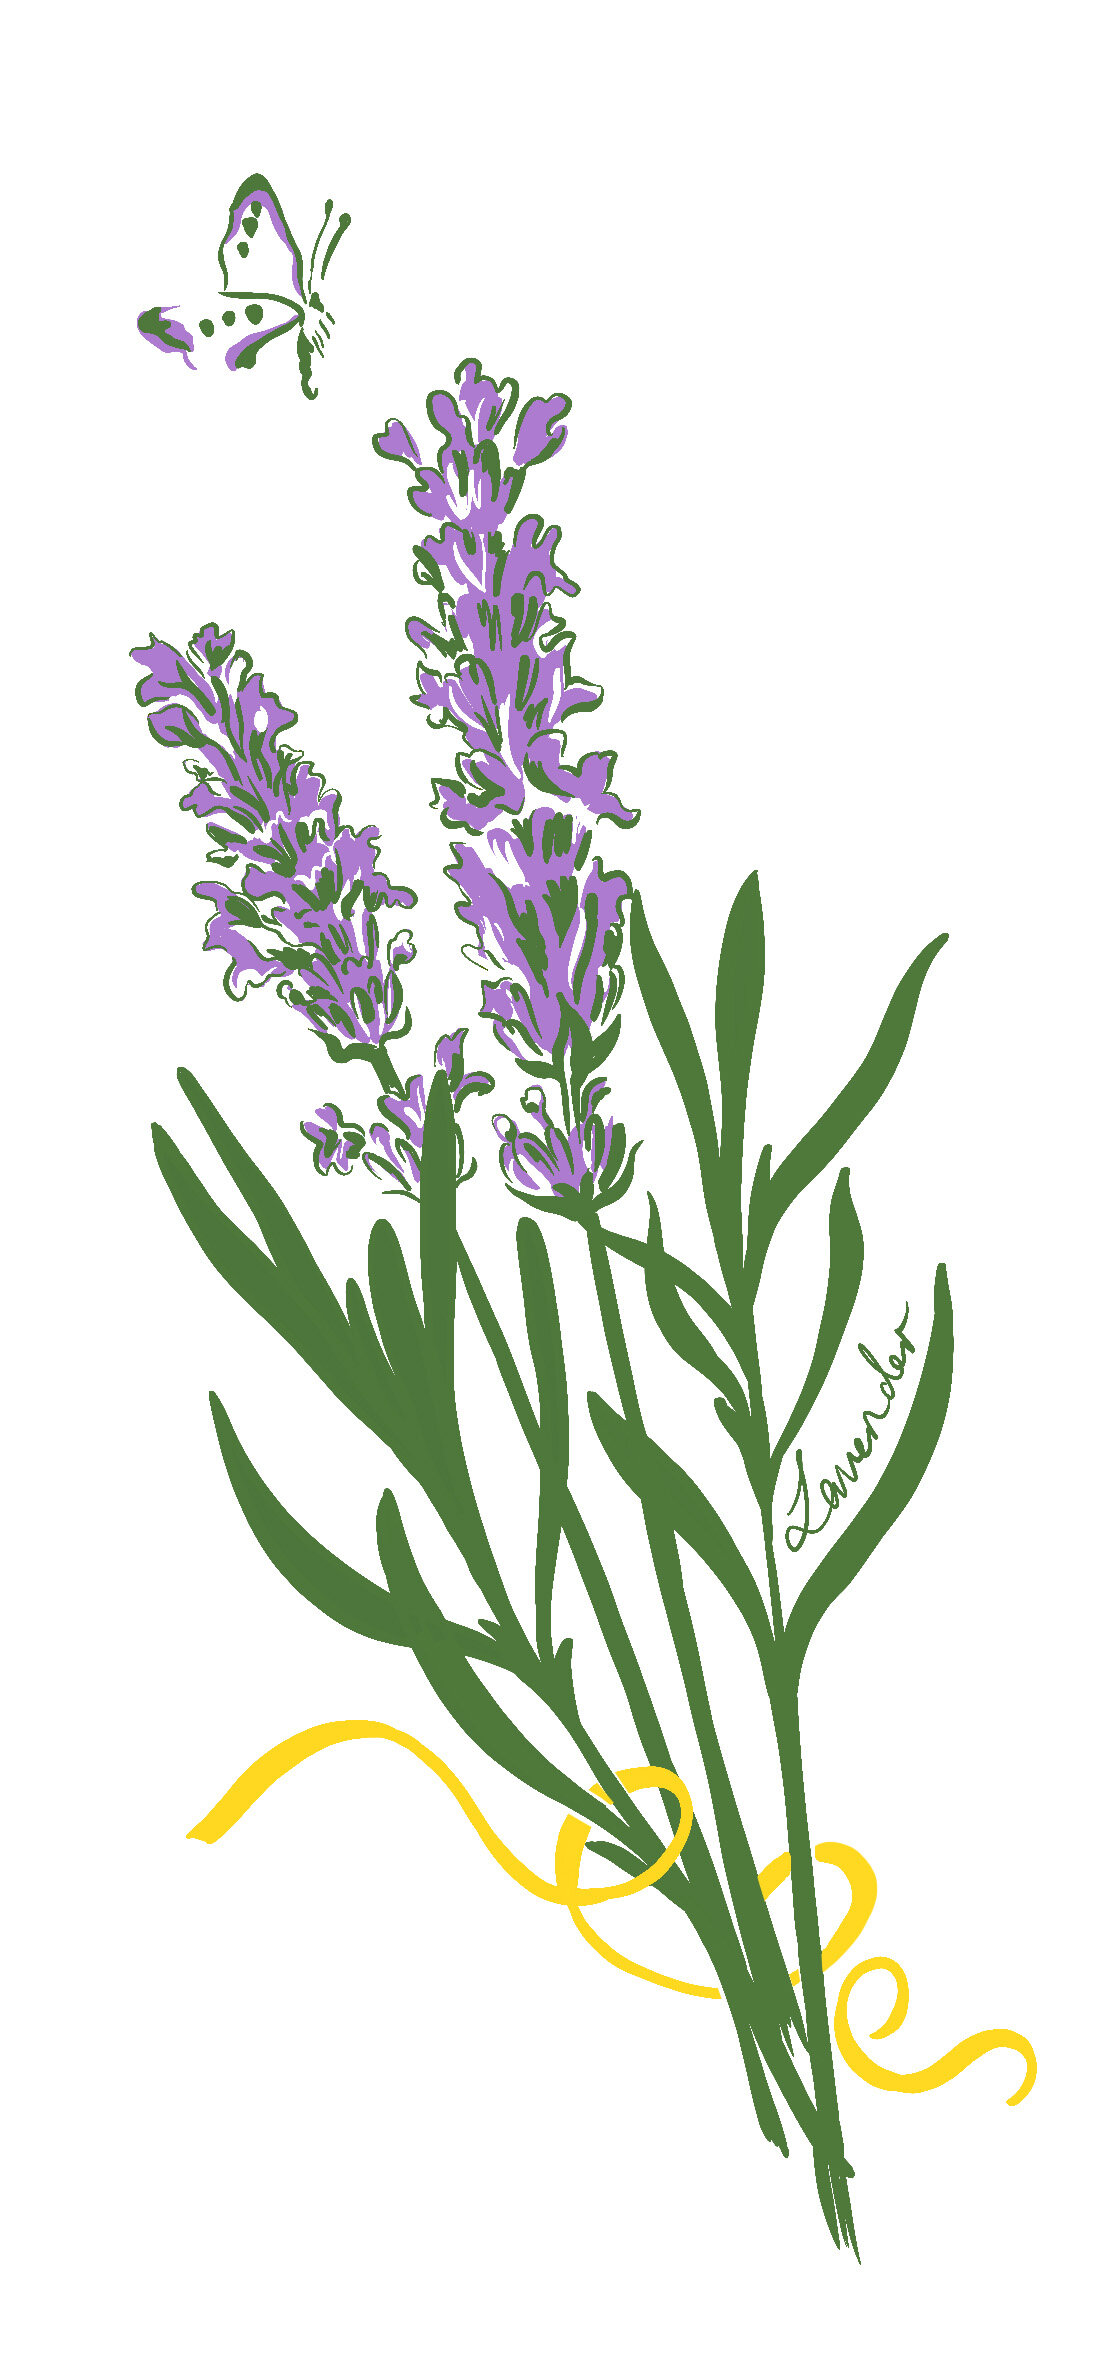 isla-simpson-for-loccitane-lavender.jpg